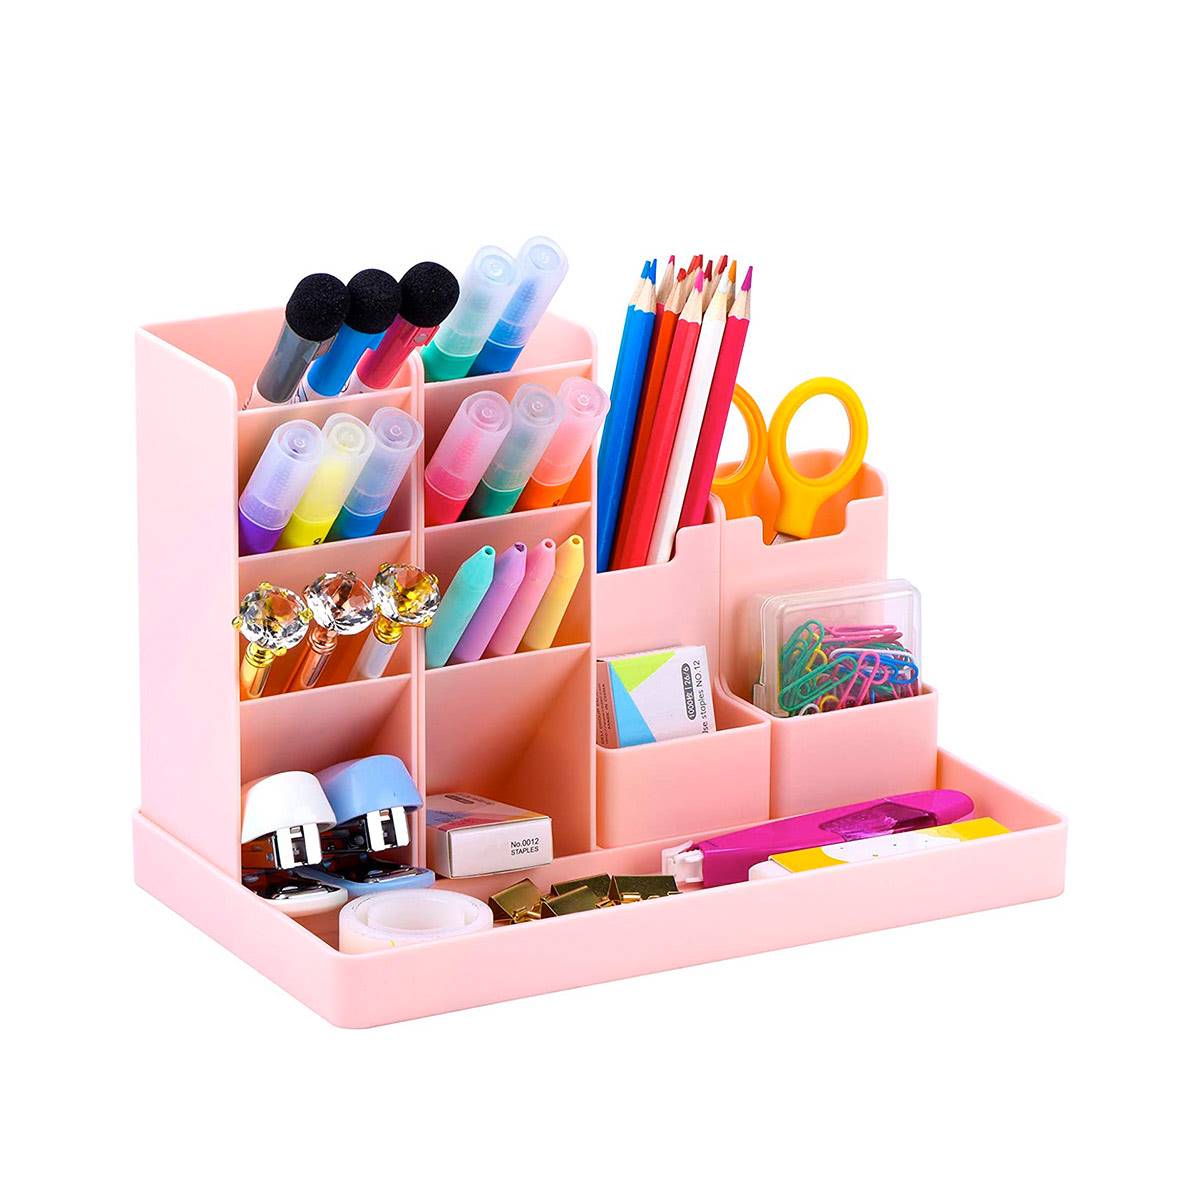 Organizador de escritorio infantil en color rosa de Amazon. 